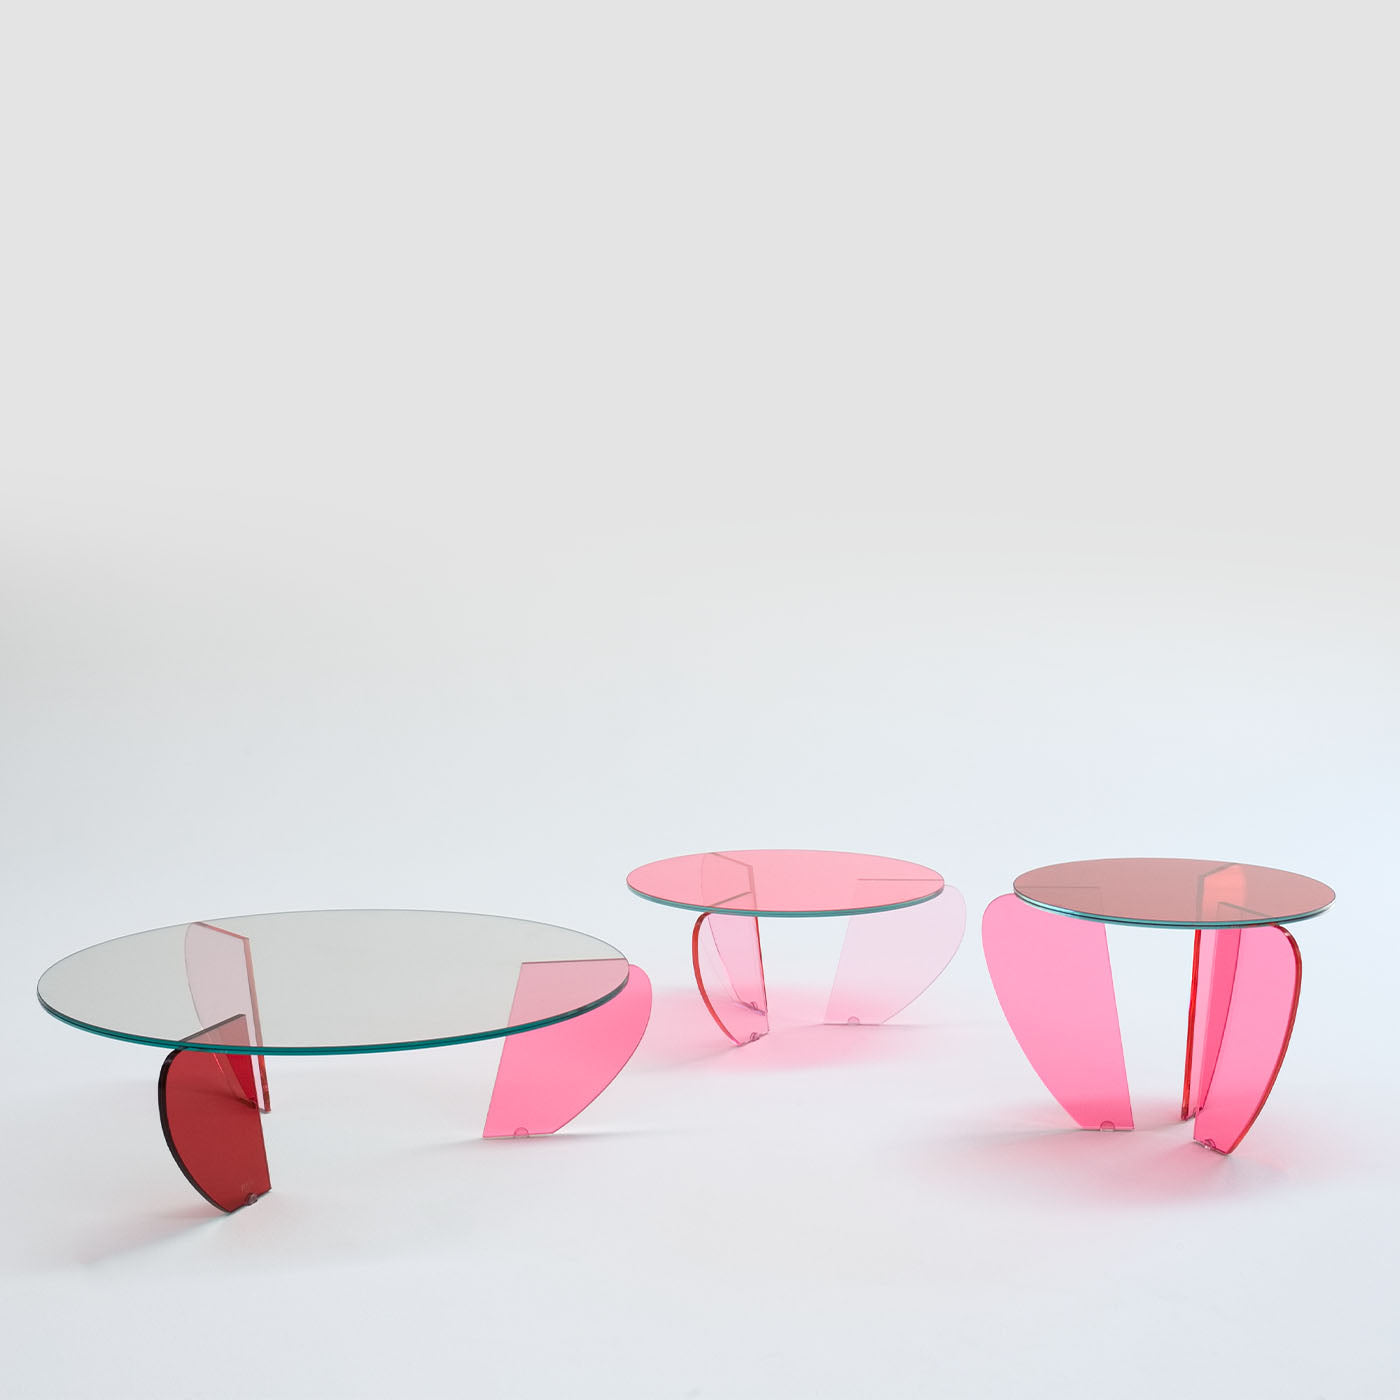 Teo Petite table d'appoint colorée par Andrea Petterini - Vue alternative 3